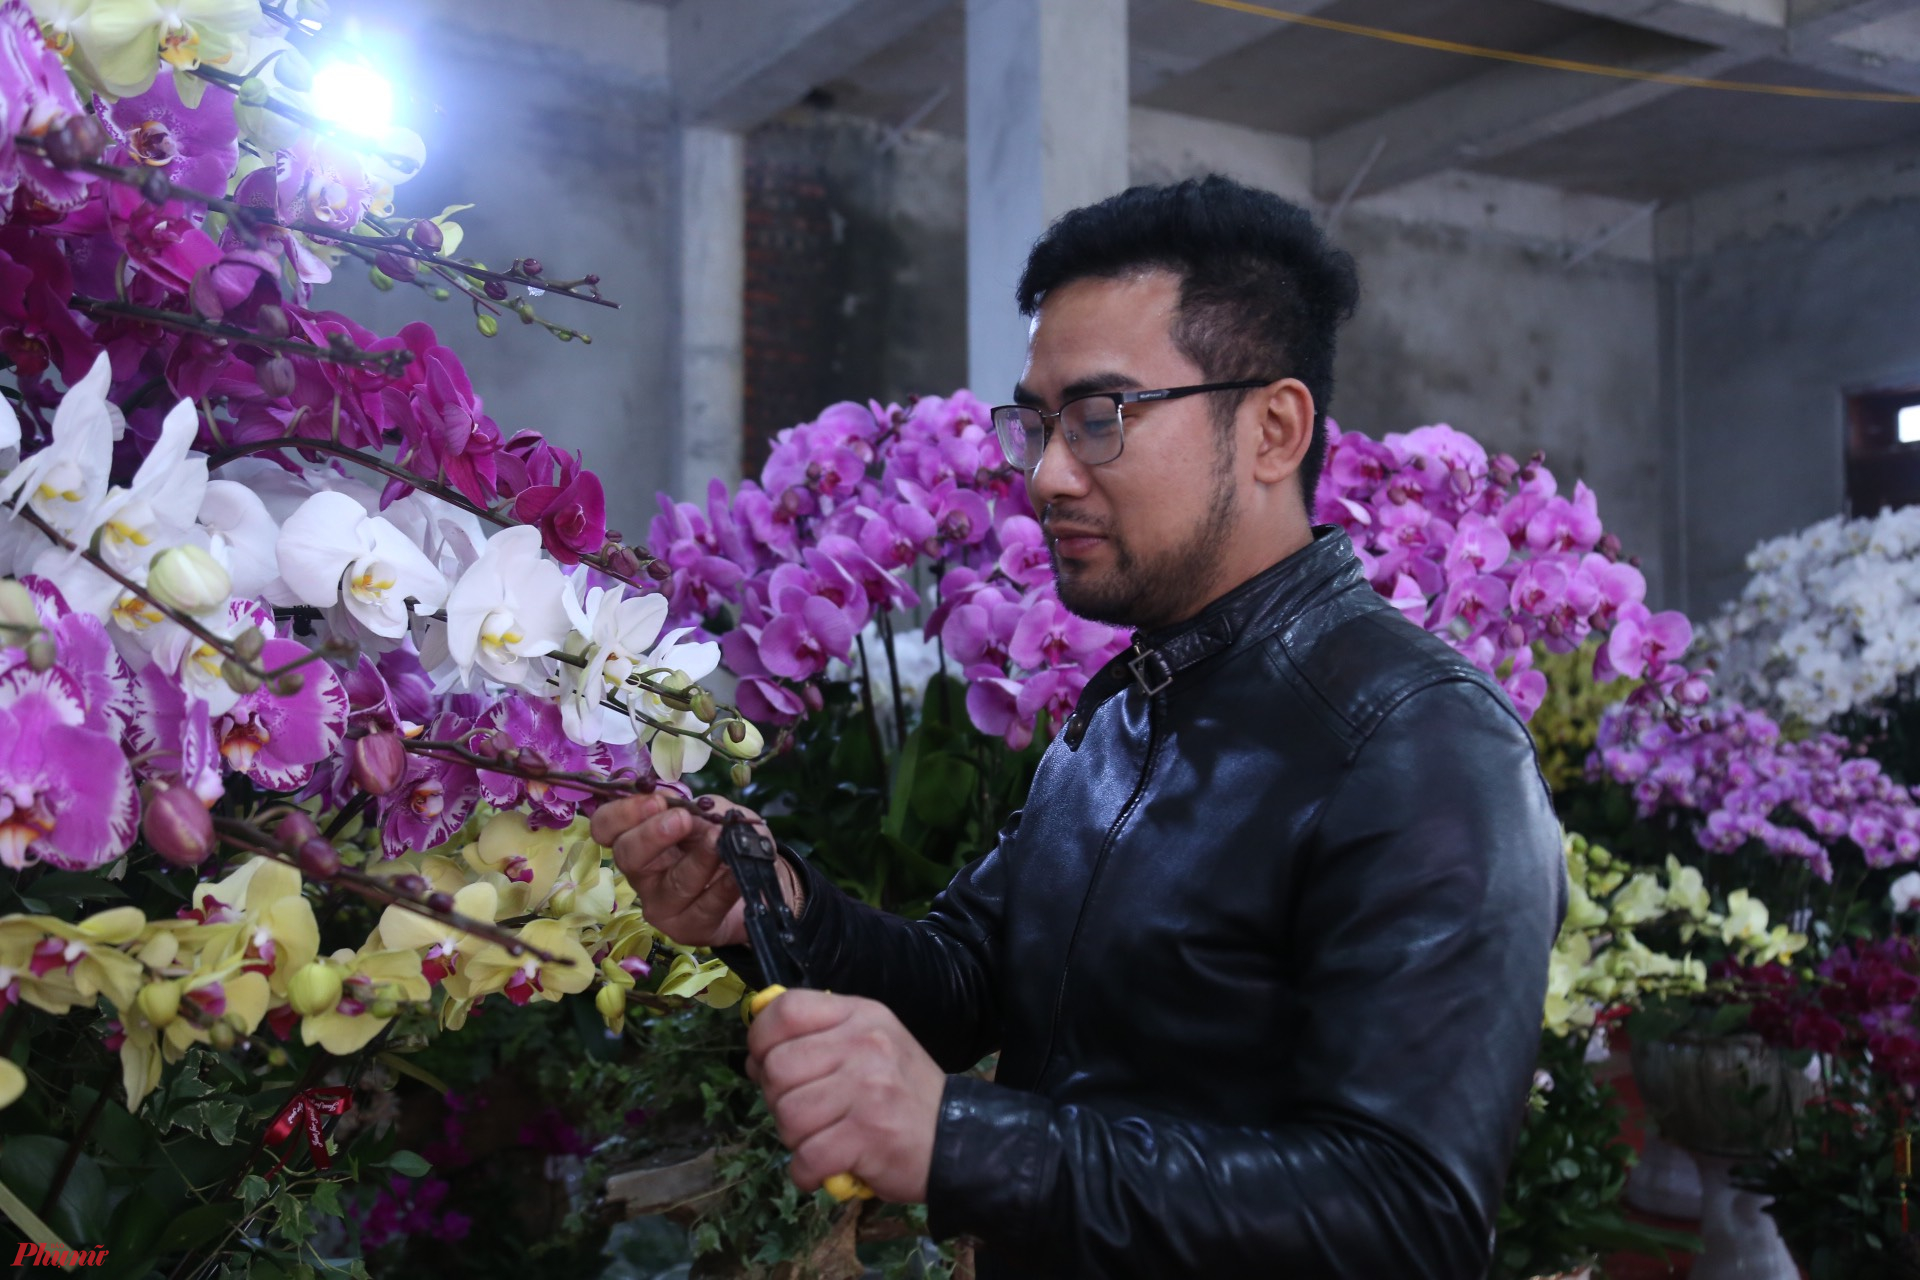 Anh Nguyễn Công Hà, chủ một shop hoa ở TP Vinh (Nghệ An) cho biết, nhu cầu chơi lan ngày tết ngày một nhiều. Để lên chậu hết hơn 15.000 bầu lan trong dịp tết này, anh phải thuê 3 thợ kết lan chính và 5 thợ phụ để thiết kế, tạo hình, cho lan vào chậu.